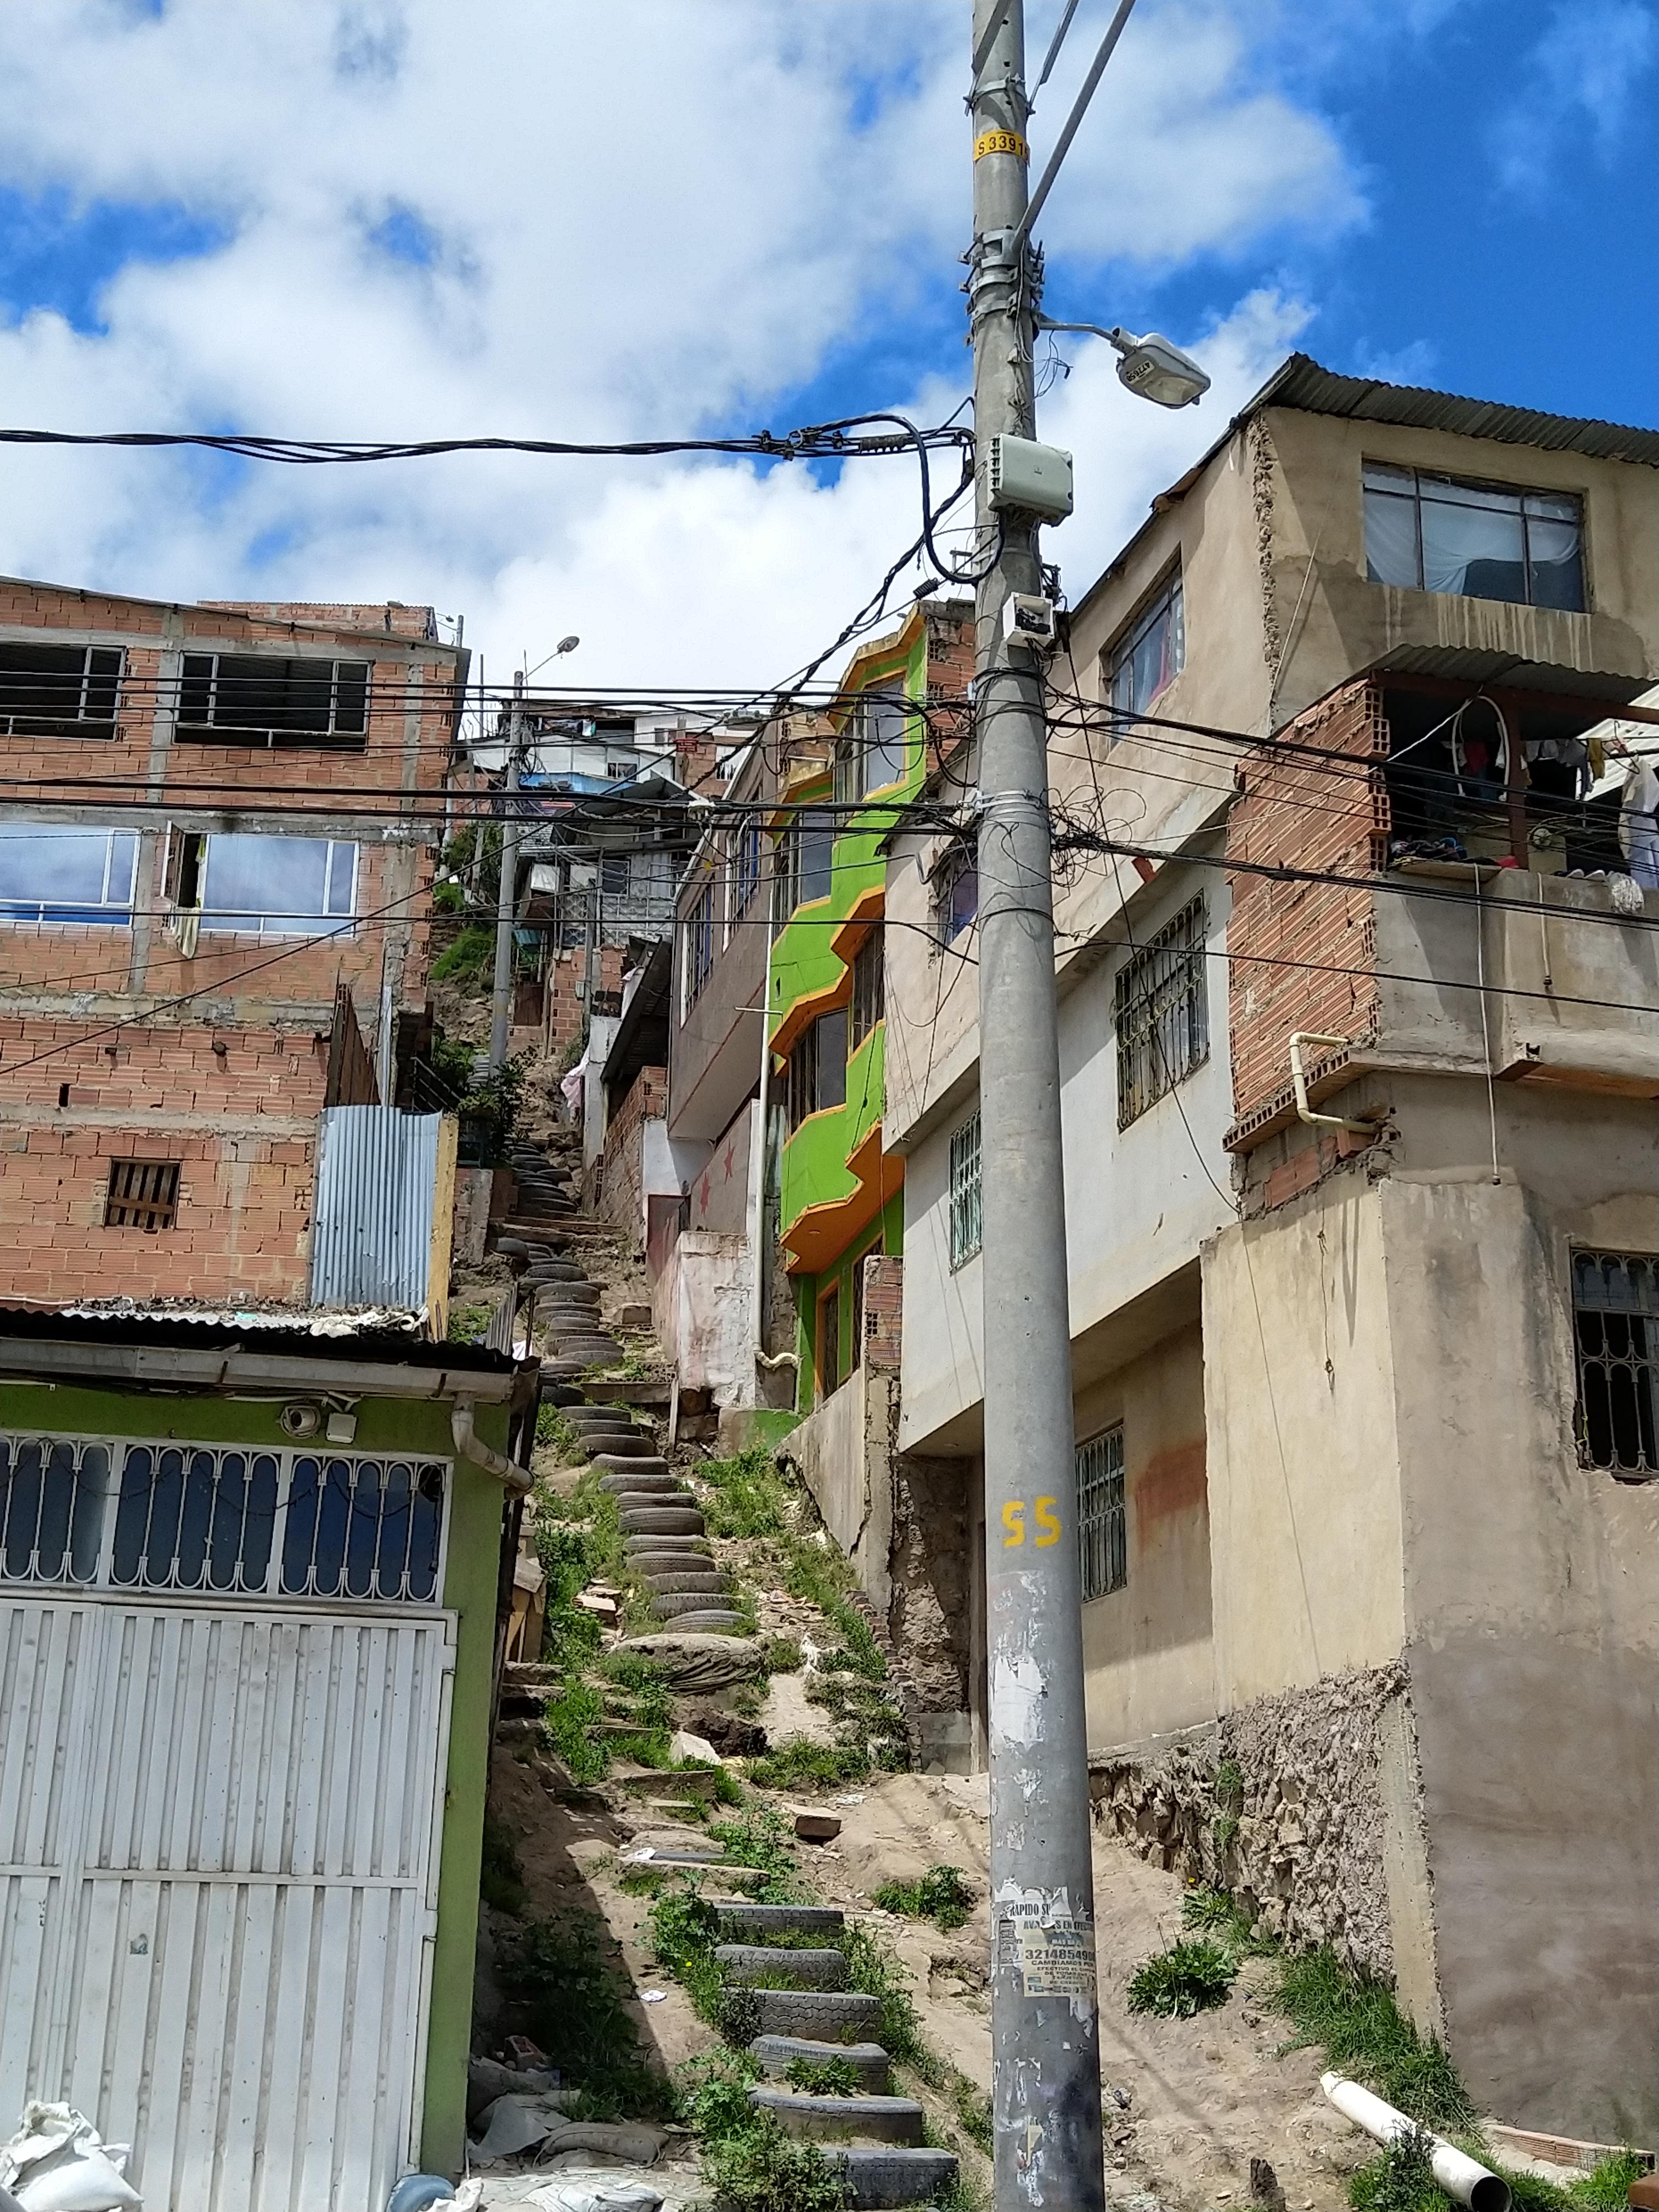 Ciudad Bolívar, TransMiCable, Bogotá, parCitypatory